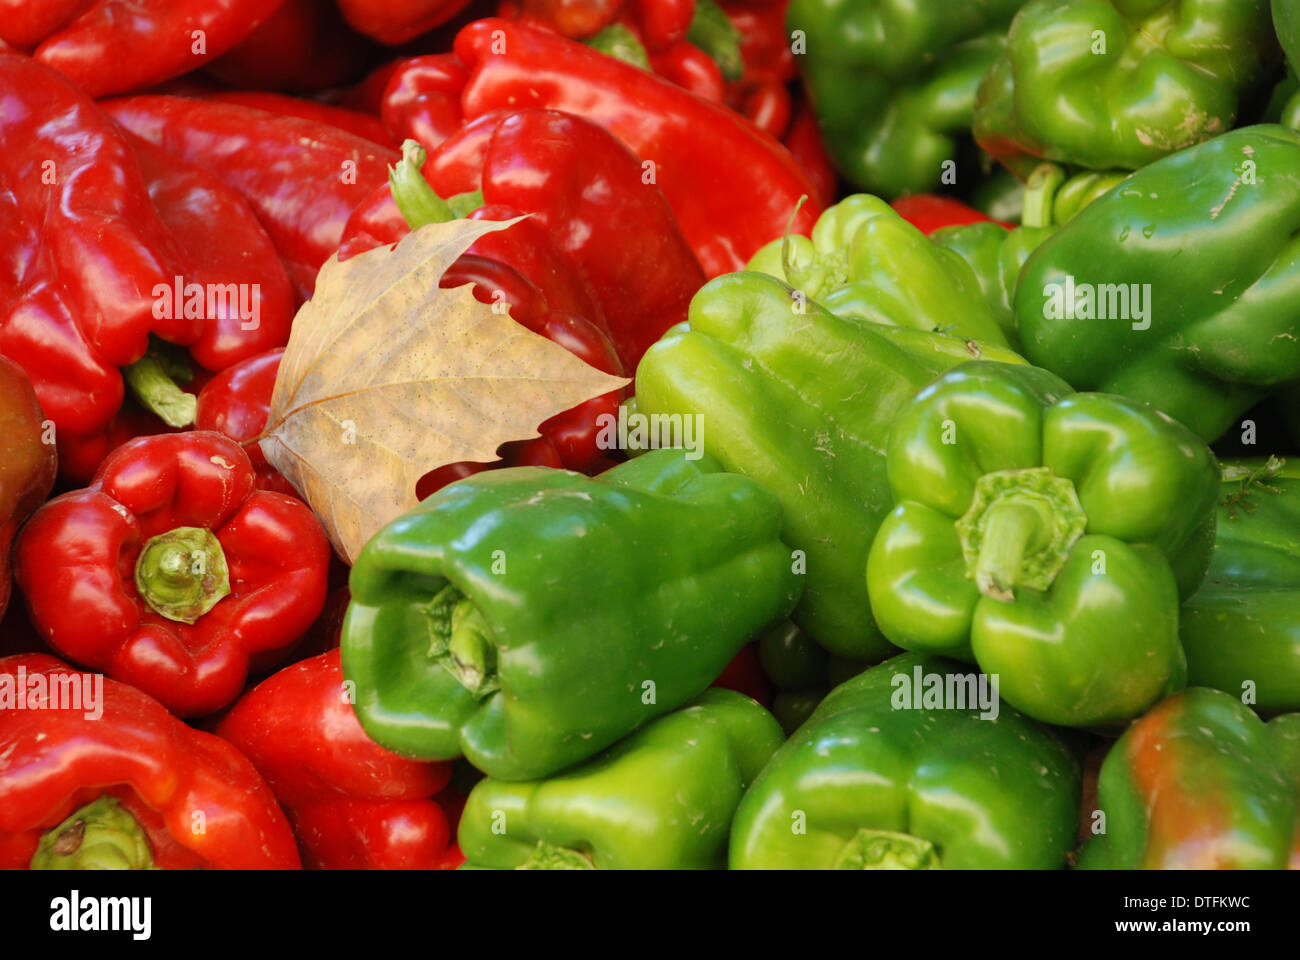 peperoni dolci misti in primo piano con foglie cadute accatastate sul mercato e pronte per la vendita e la luce che cattura il loro colore rosso e verde Foto Stock